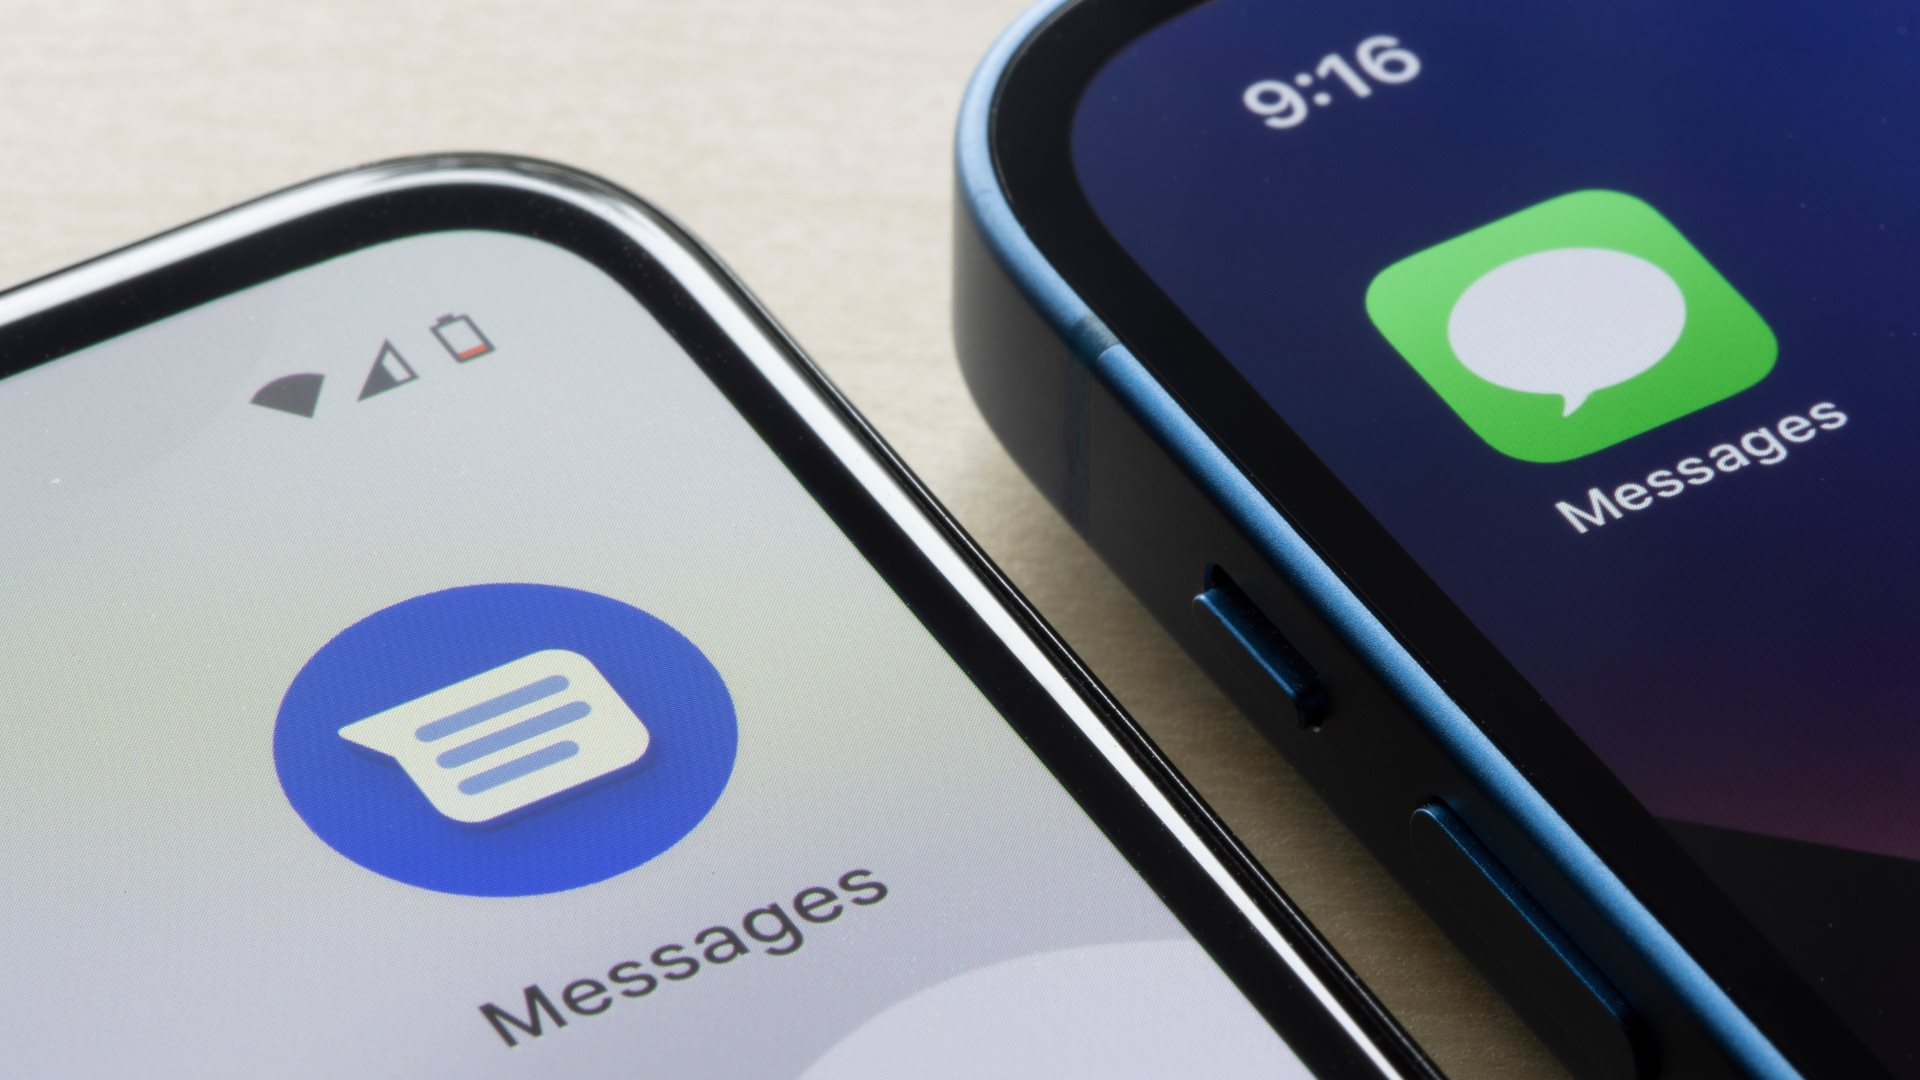 Apple ra thông báo gây sốc về hợp tác với Google, hứa hẹn sẽ "nhất thống giang hồ" đối với ứng dụng nhắn tin trong tương lai- Ảnh 1.